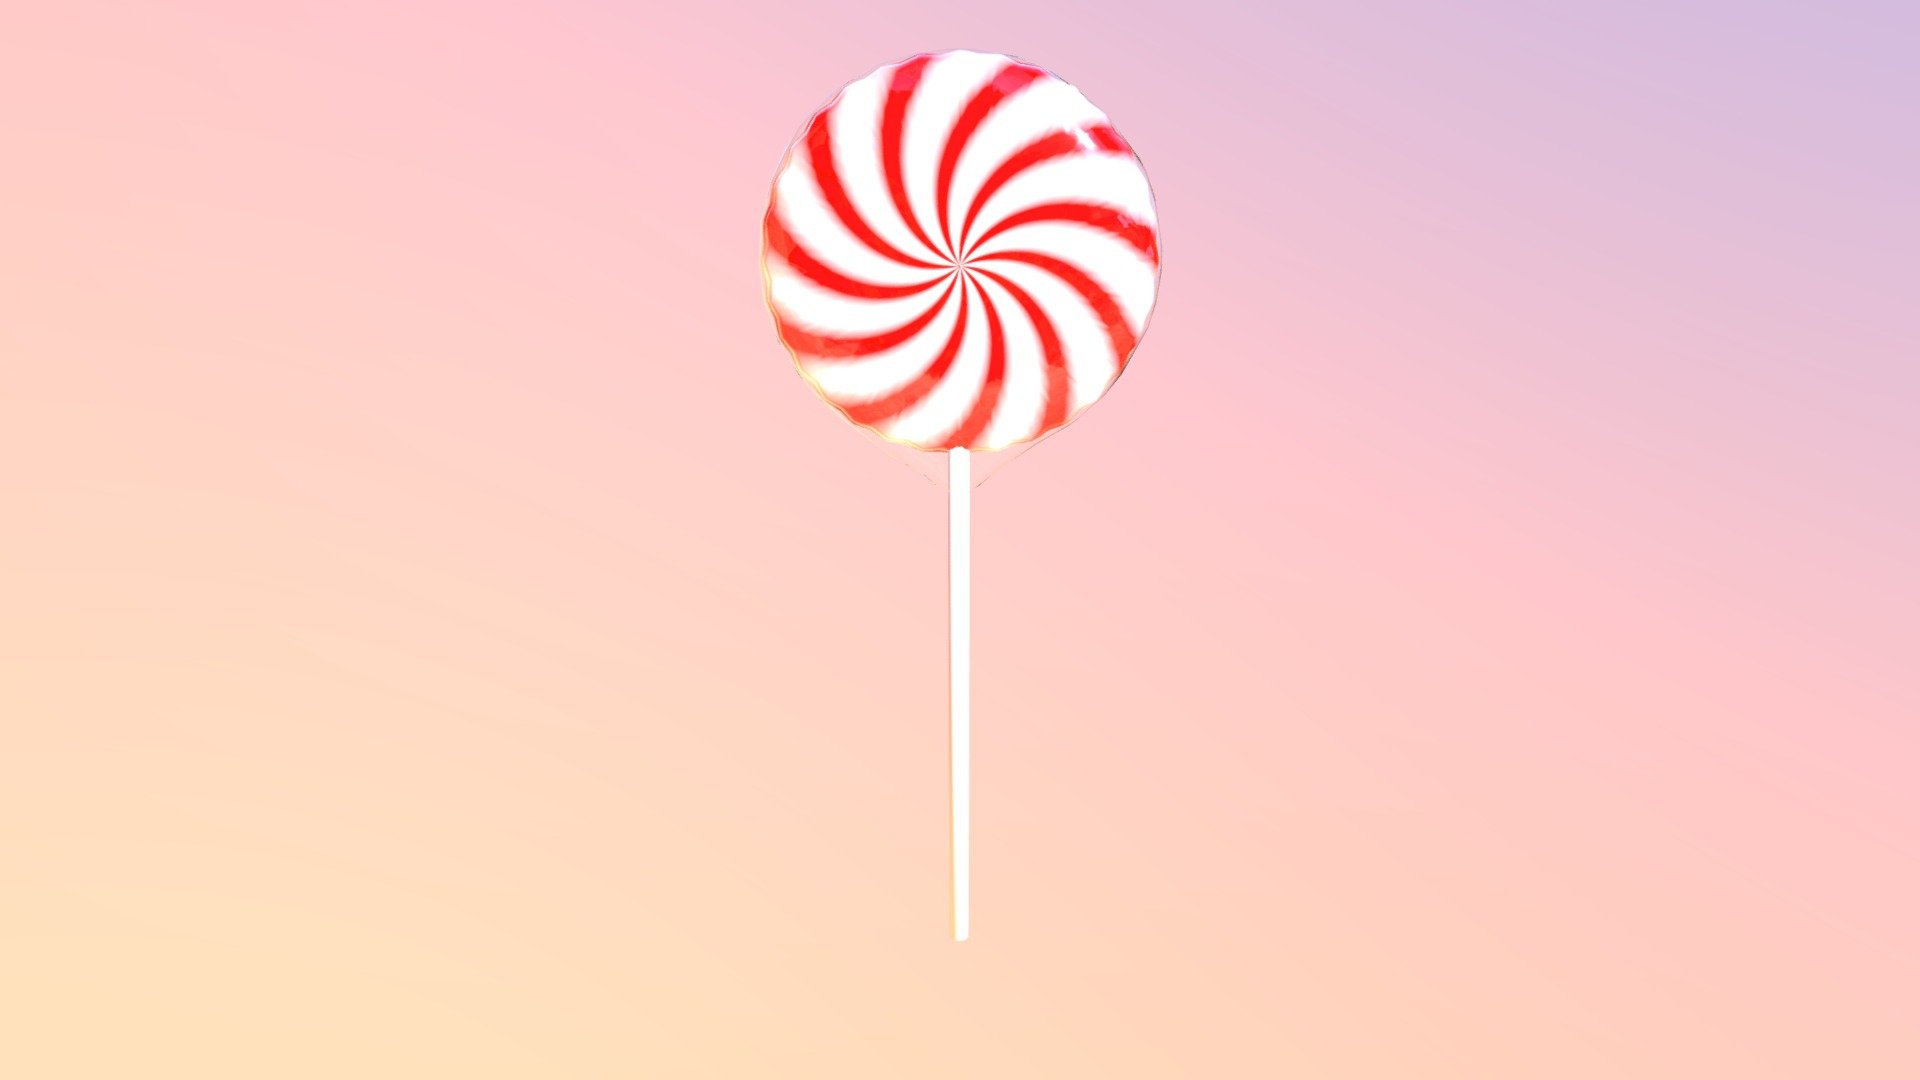 Lollipop popop - Download Free 3D model by arast2517 [3071e2c] - Sketchfab